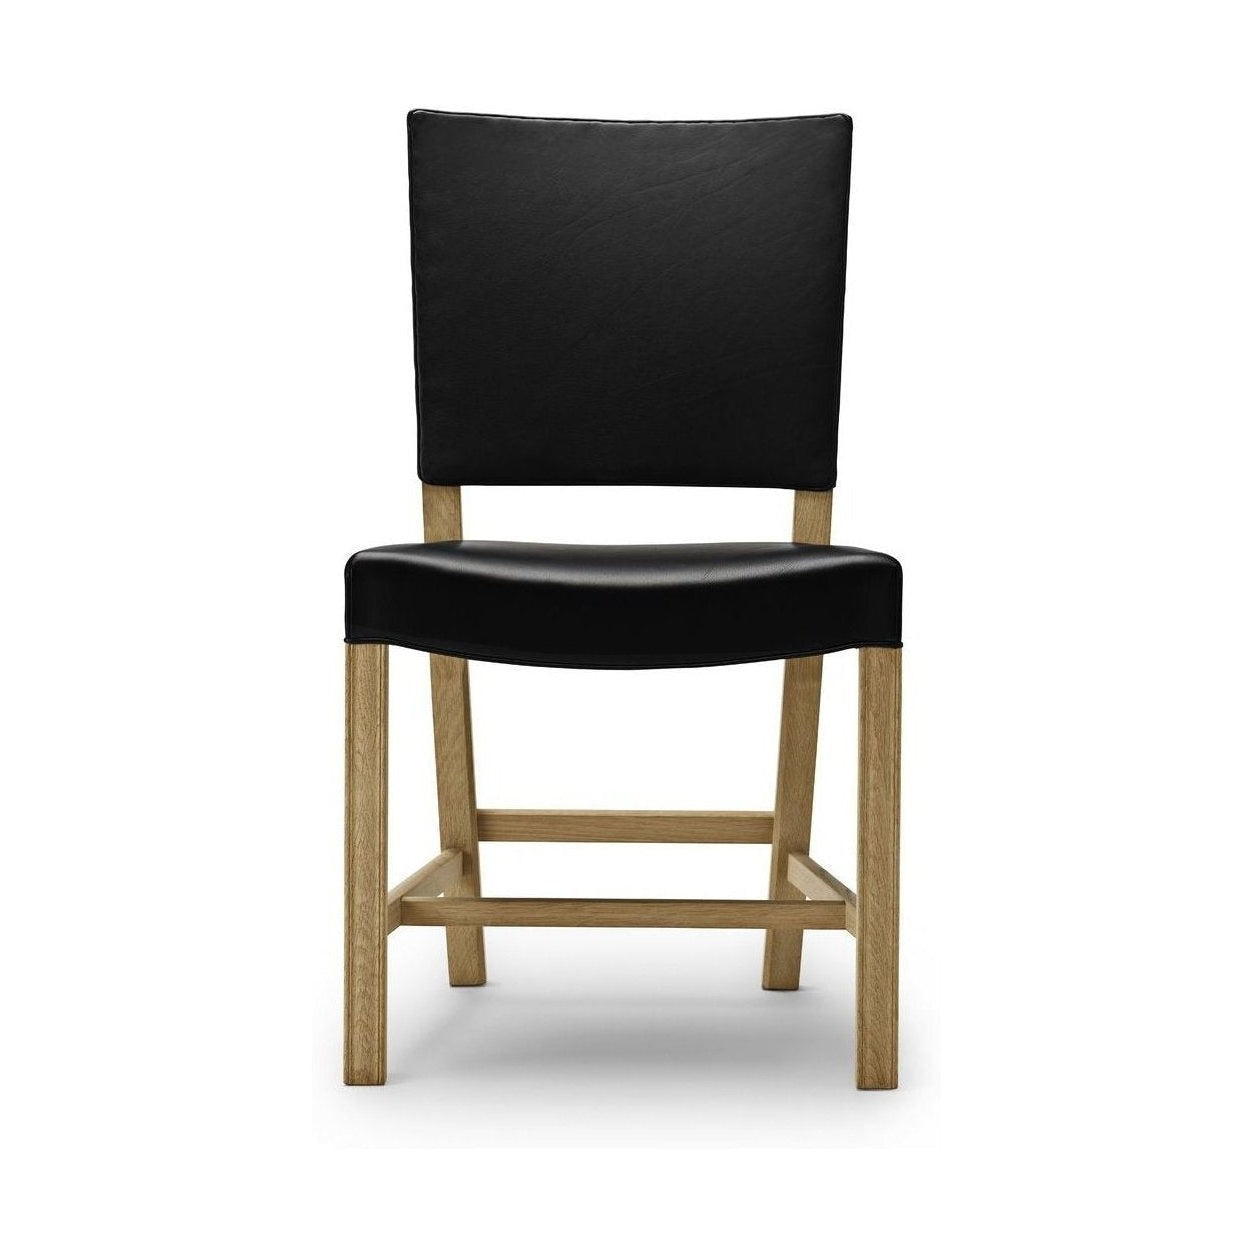 Carl Hansen KK37580 großer roter Stuhl, Seifen Eiche/schwarzes Leder